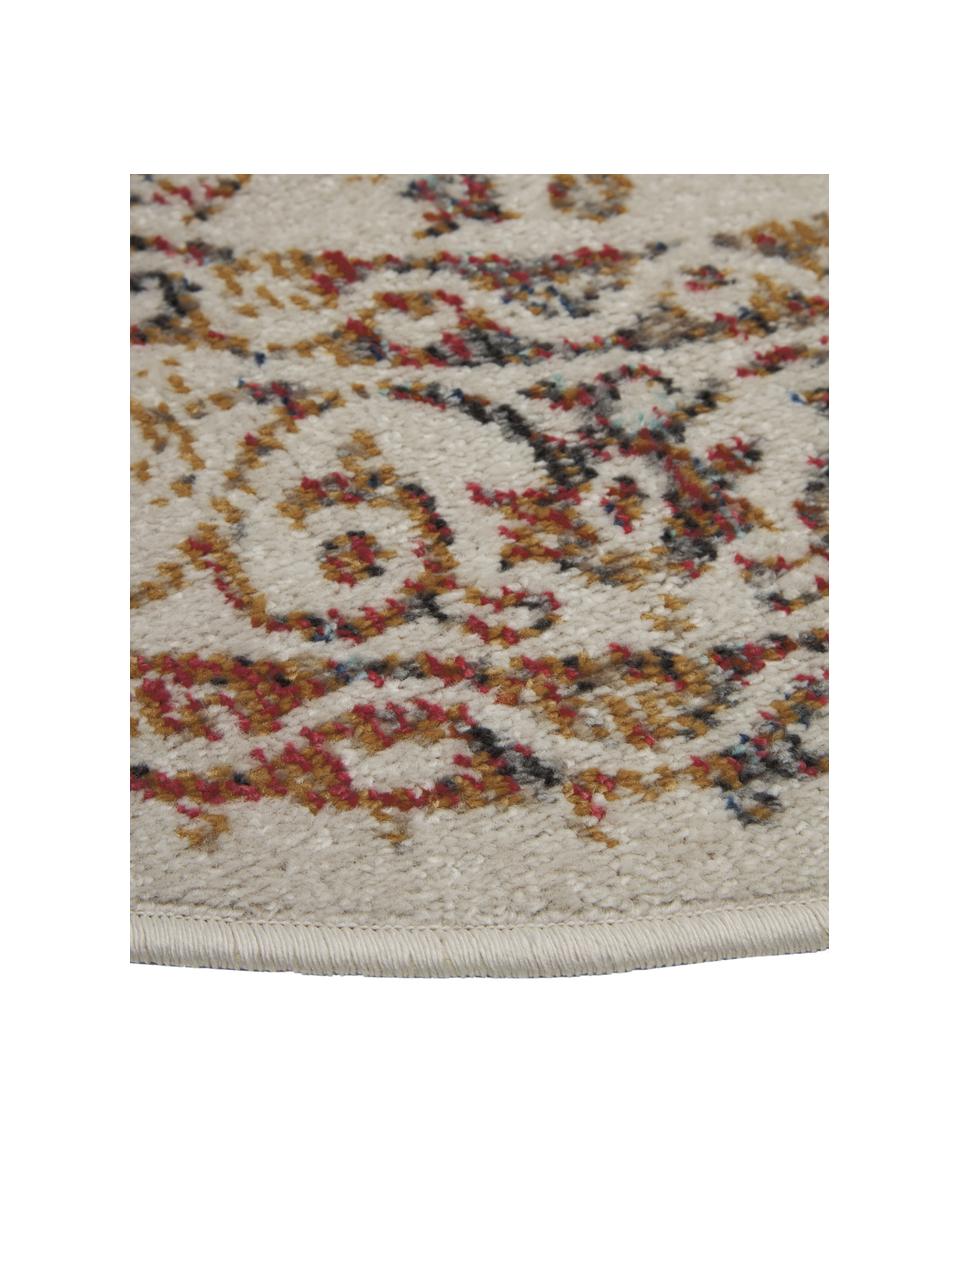 Runder In- & Outdoor-Teppich Dana im Vintage Style in Mehrfarbig, 100% Polypropylen, Mehrfarbig, Ø 120 cm (Grösse S)